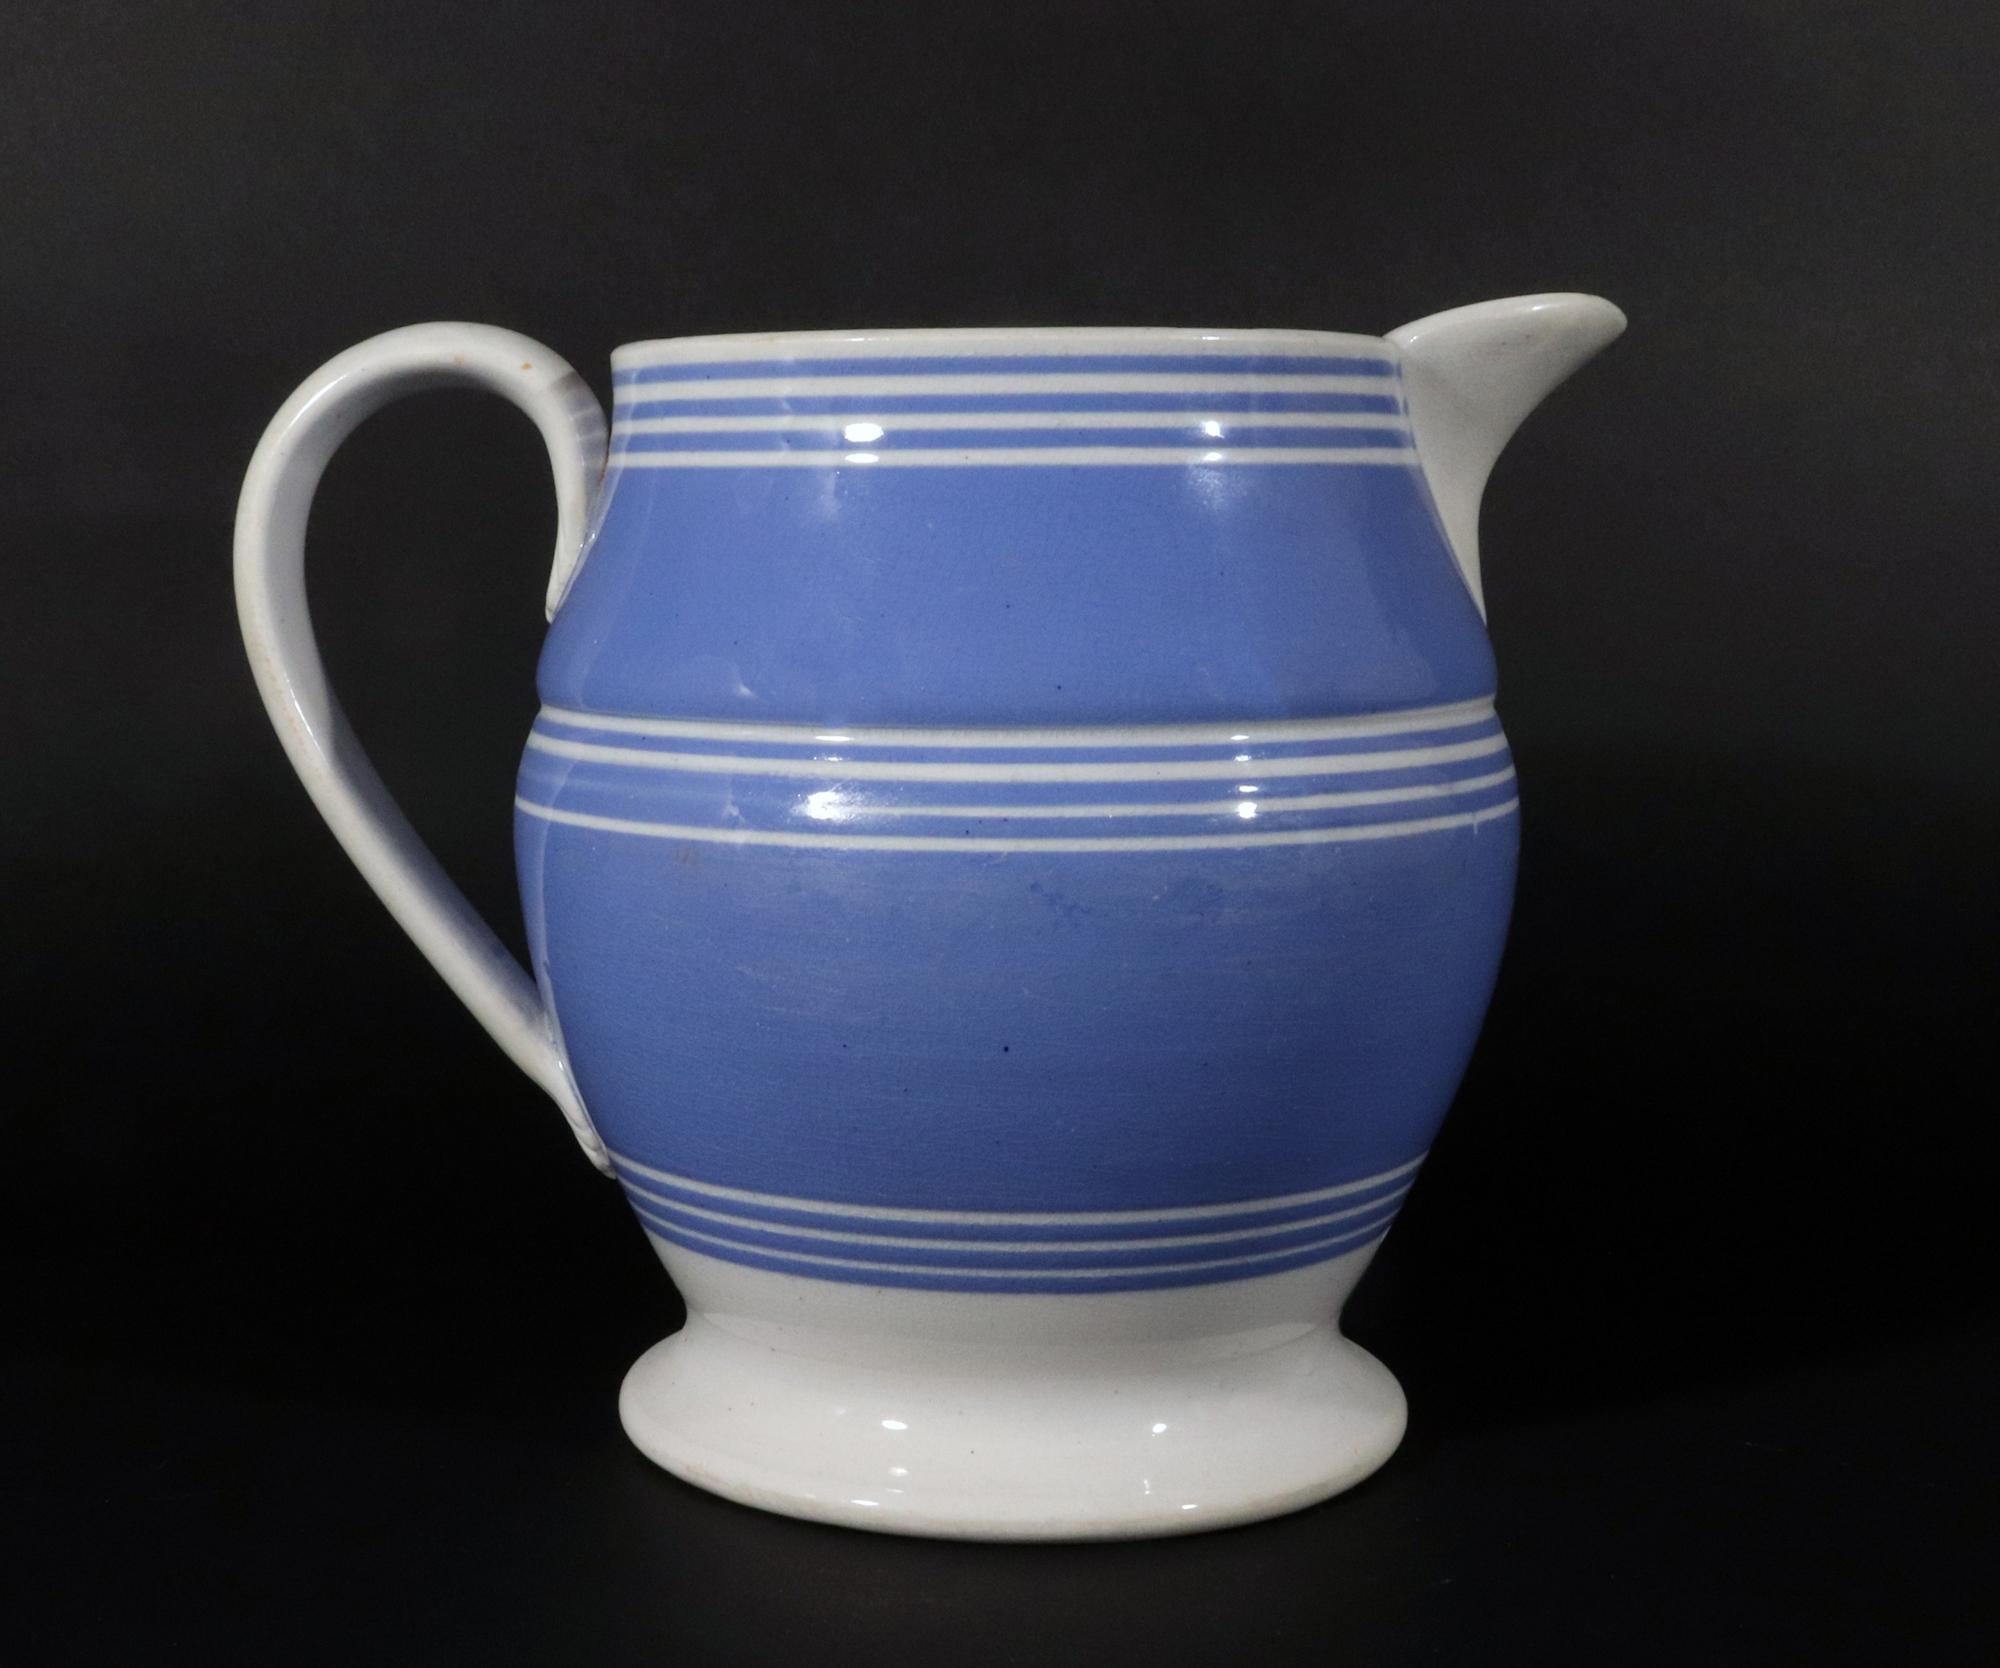 Pichet bleu en poterie anglaise décorée de moka avec des bandes blanches,
Circa 1820

Cette cruche en faïence perlée décorée à l'engobe présente un fond bleu vibrant orné de trois groupes distincts de quatre fines bandes blanches. Les bandes